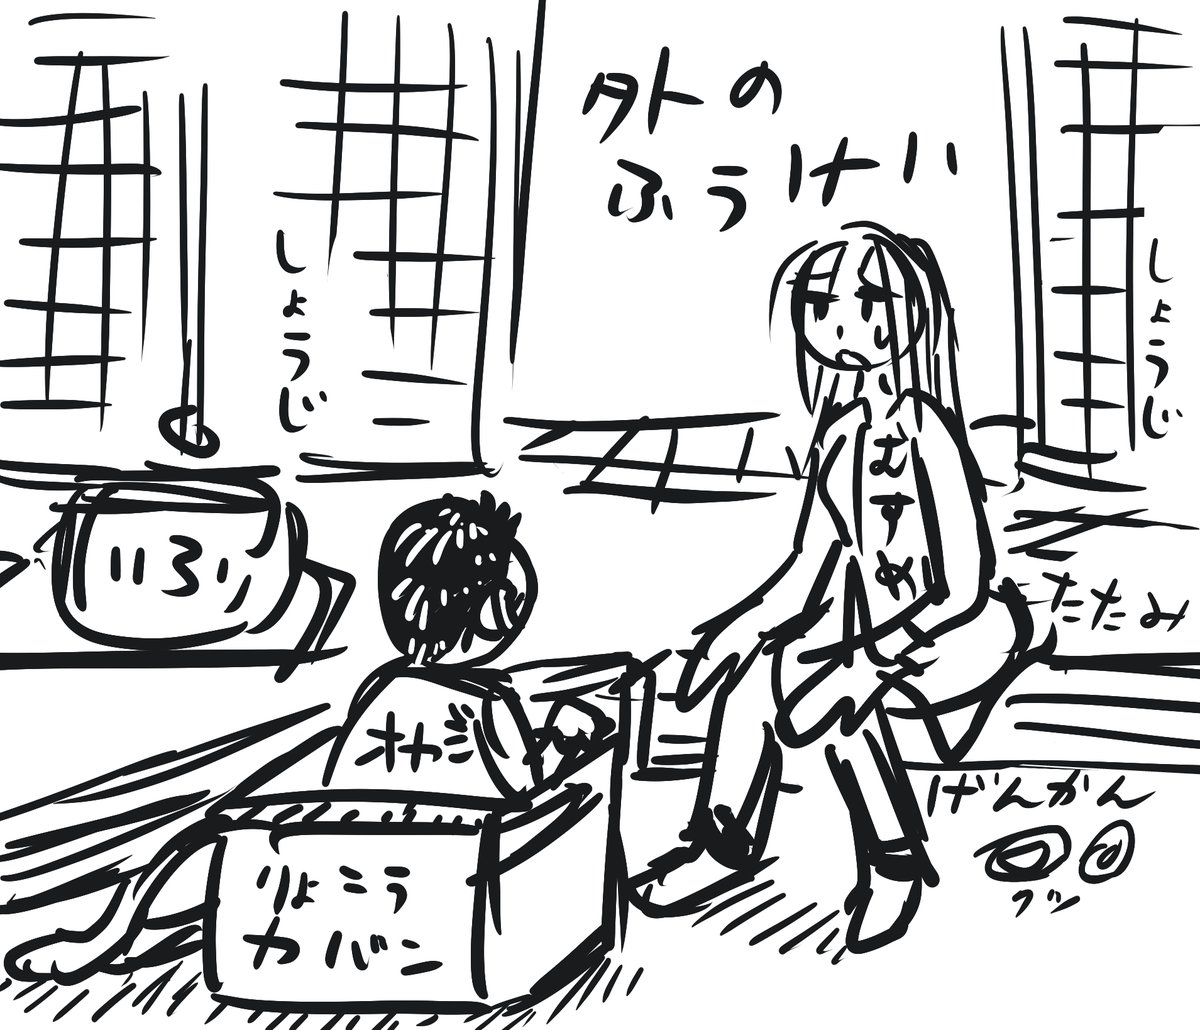 描きたくなったらちゃんと描くイラストのラフ4コ目 

タイトル:東京からなにもかもいやになり傷心(しょうしん)旅行で心をいやすために人がほとんど住んでない村にやってきたが間違えて旅行カバンにオヤジ(実の父親)入れてきてしまい意気消沈してる娘

    #描きたくなったらちゃんと描くイラスト 